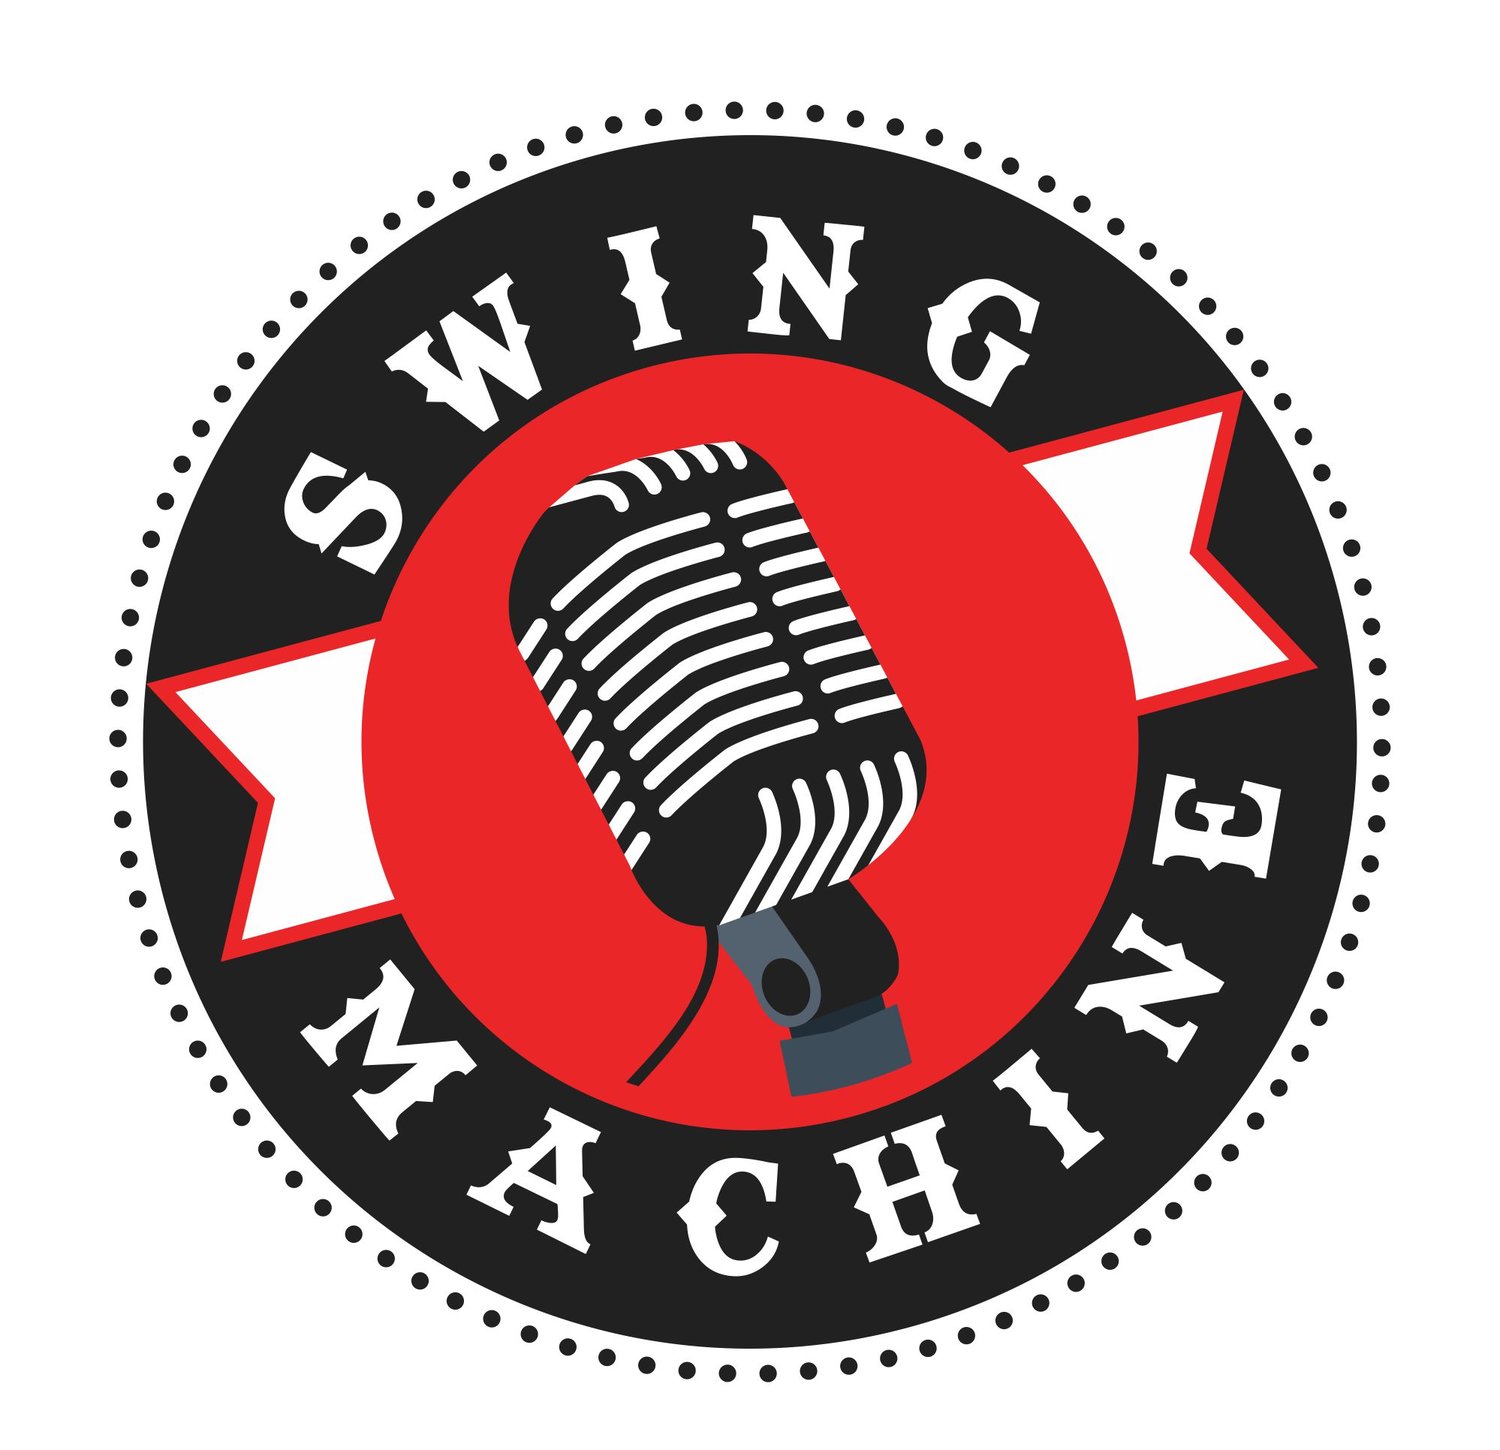 Swing Machine